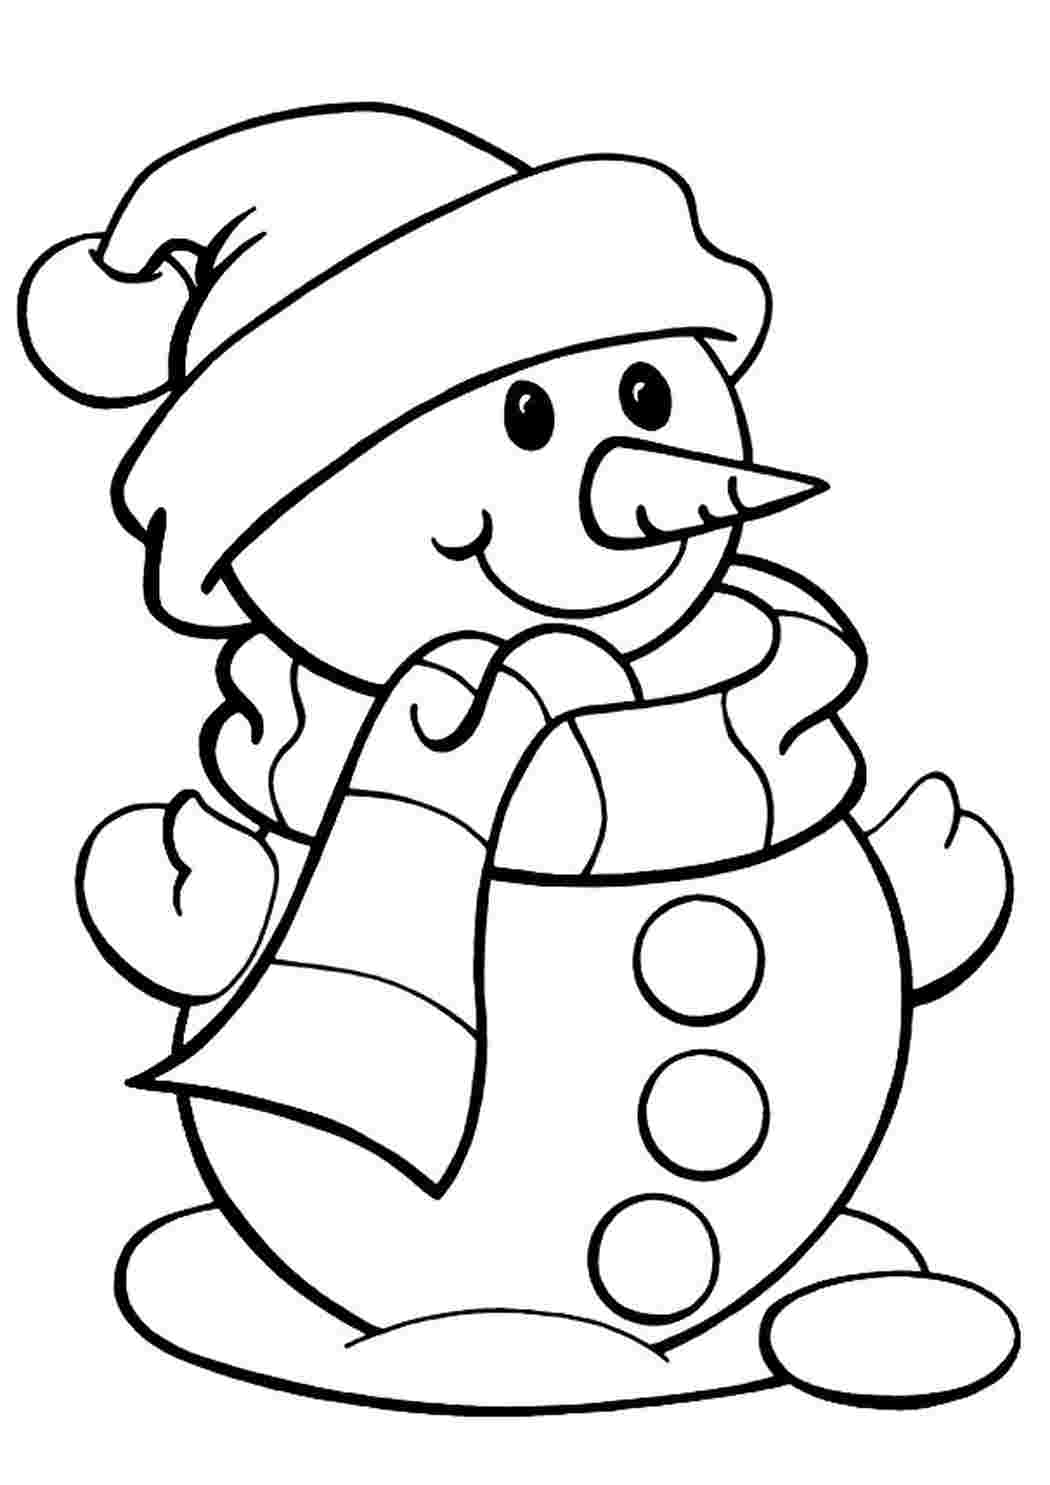 Раскраски Снеговик. Лучшие картинки для детей скачивайте и распечатывайте